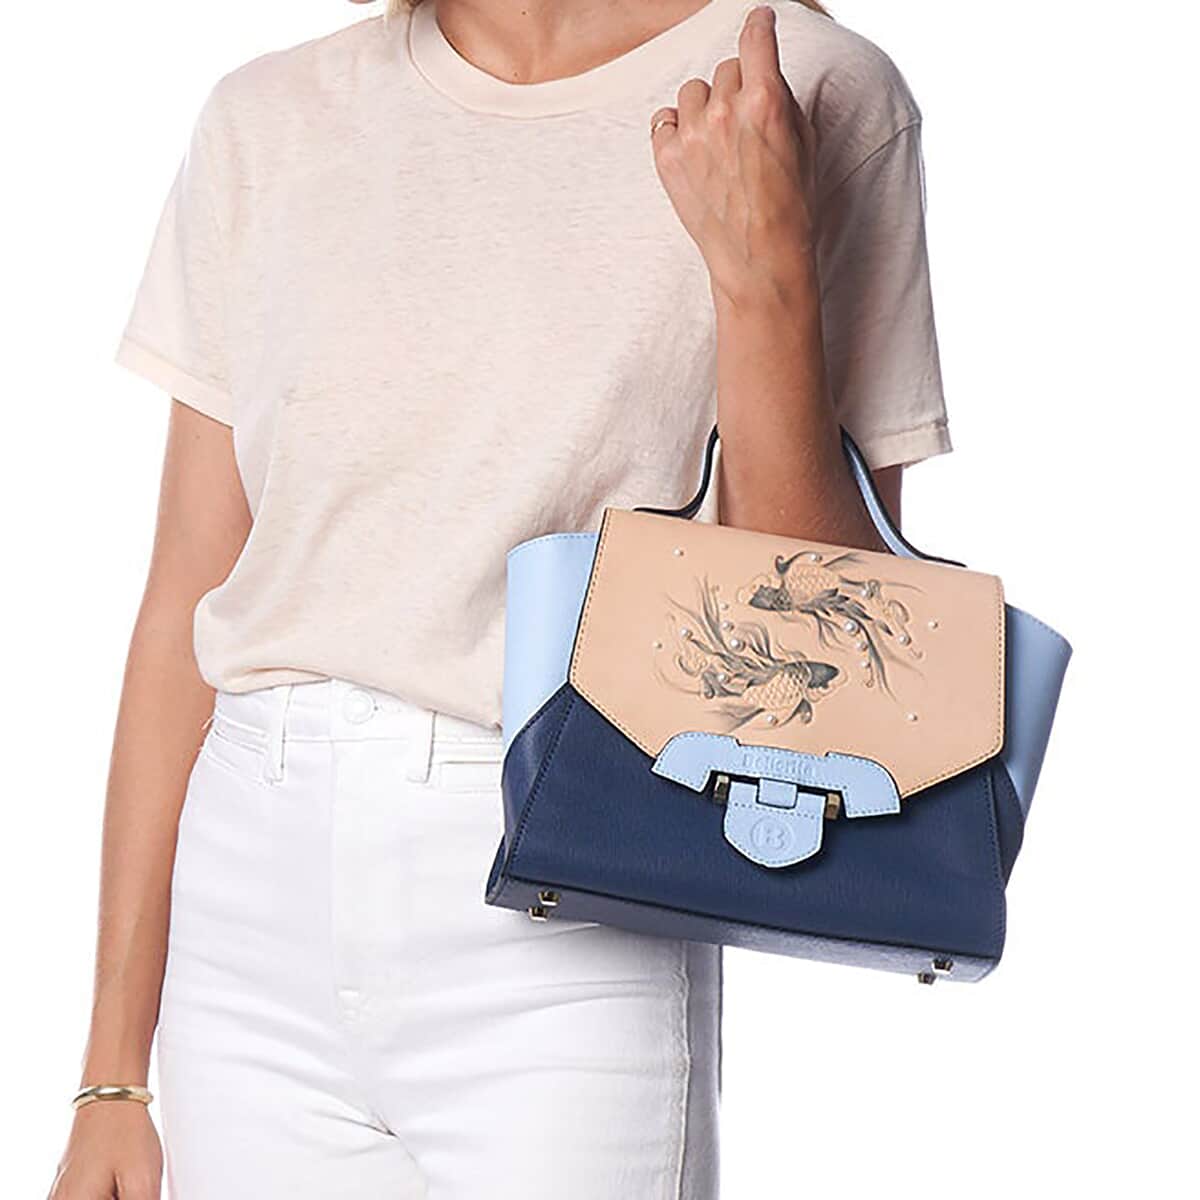 Bellorita-Koi Fish Small Blue Top Grain Leather Satchel | Leather Satchel Bag for Women | Leather Purse Handbag image number 2